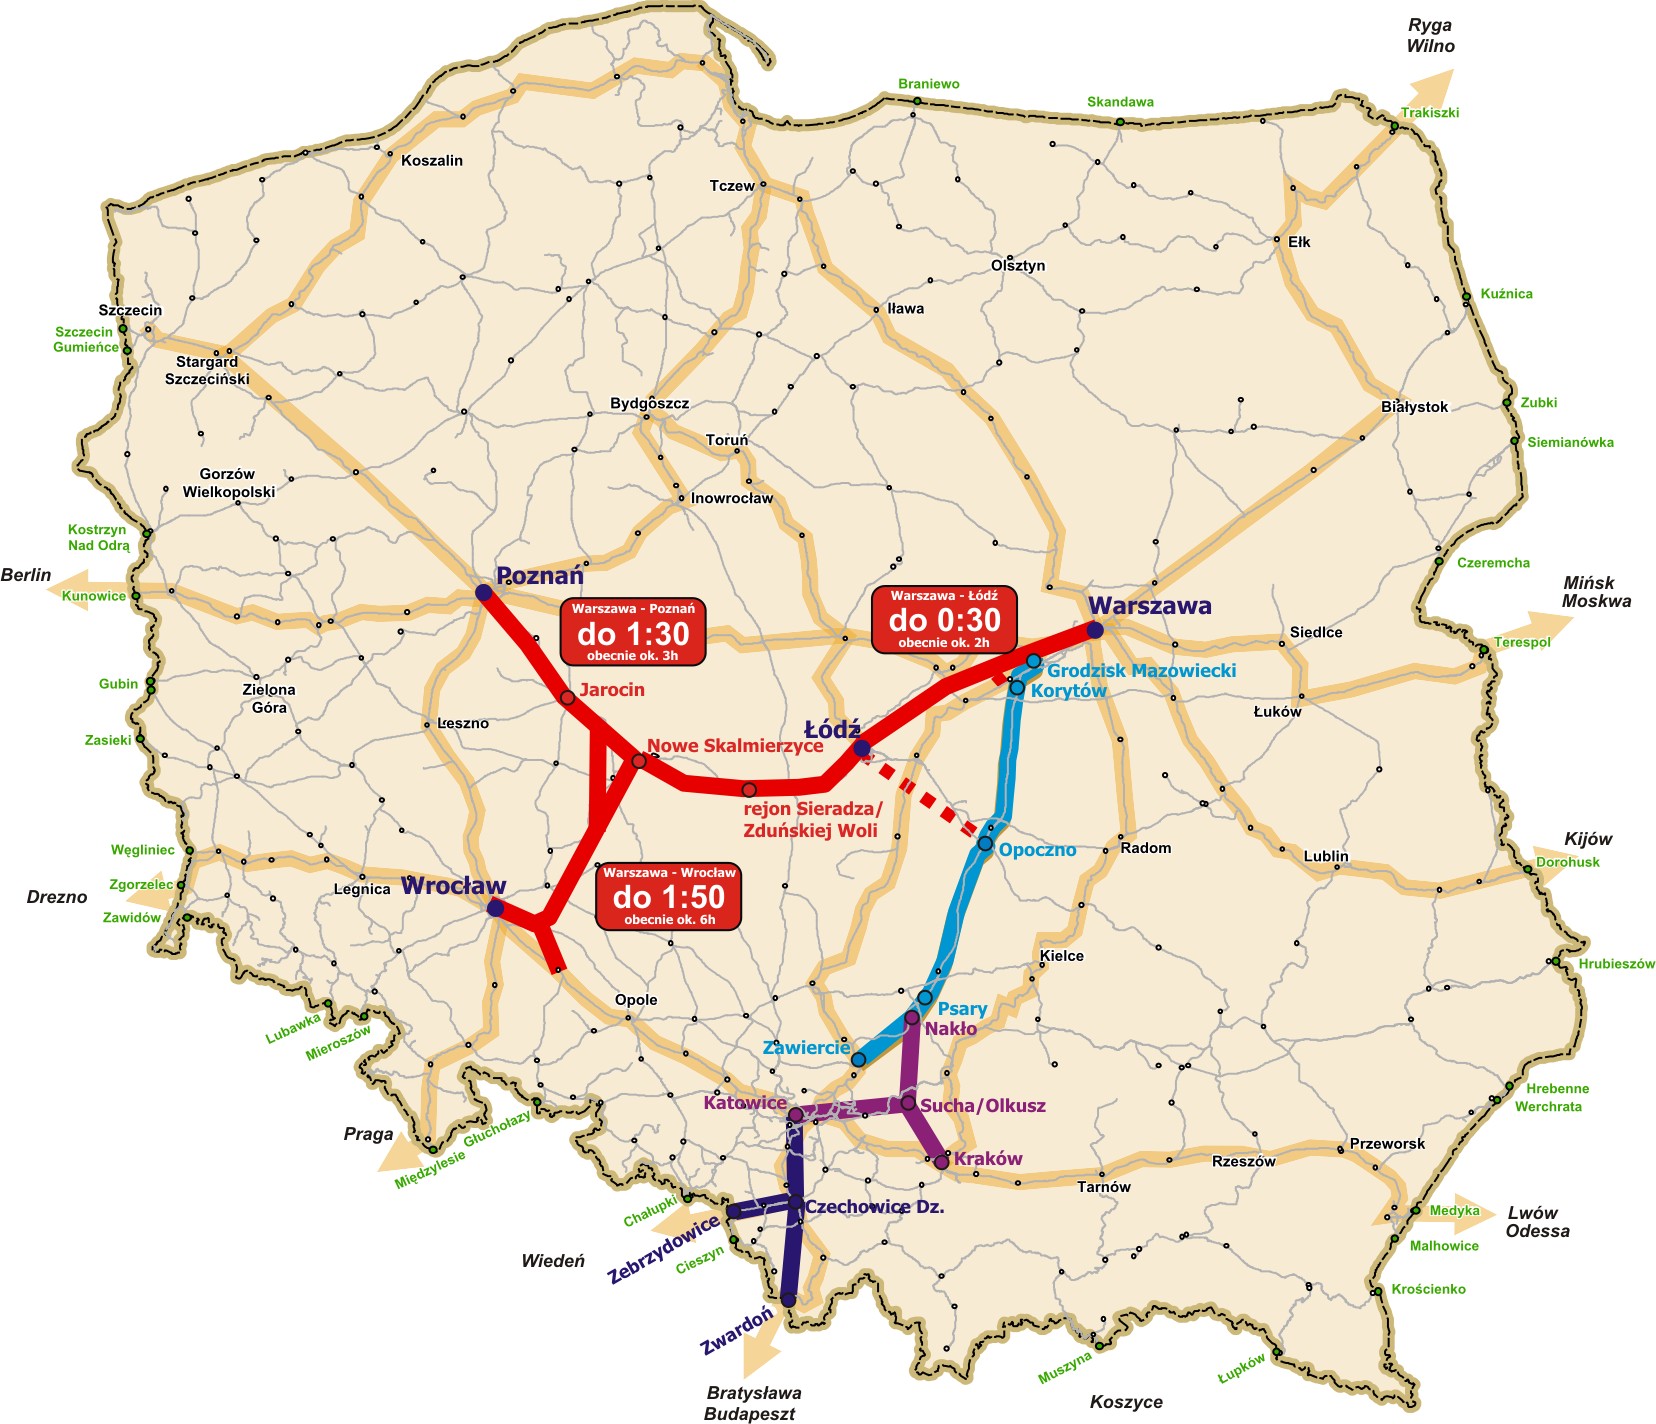 Warszawa Łódź Poznań/Wrocław nowa linia kolejowa budowana od podstaw Założone